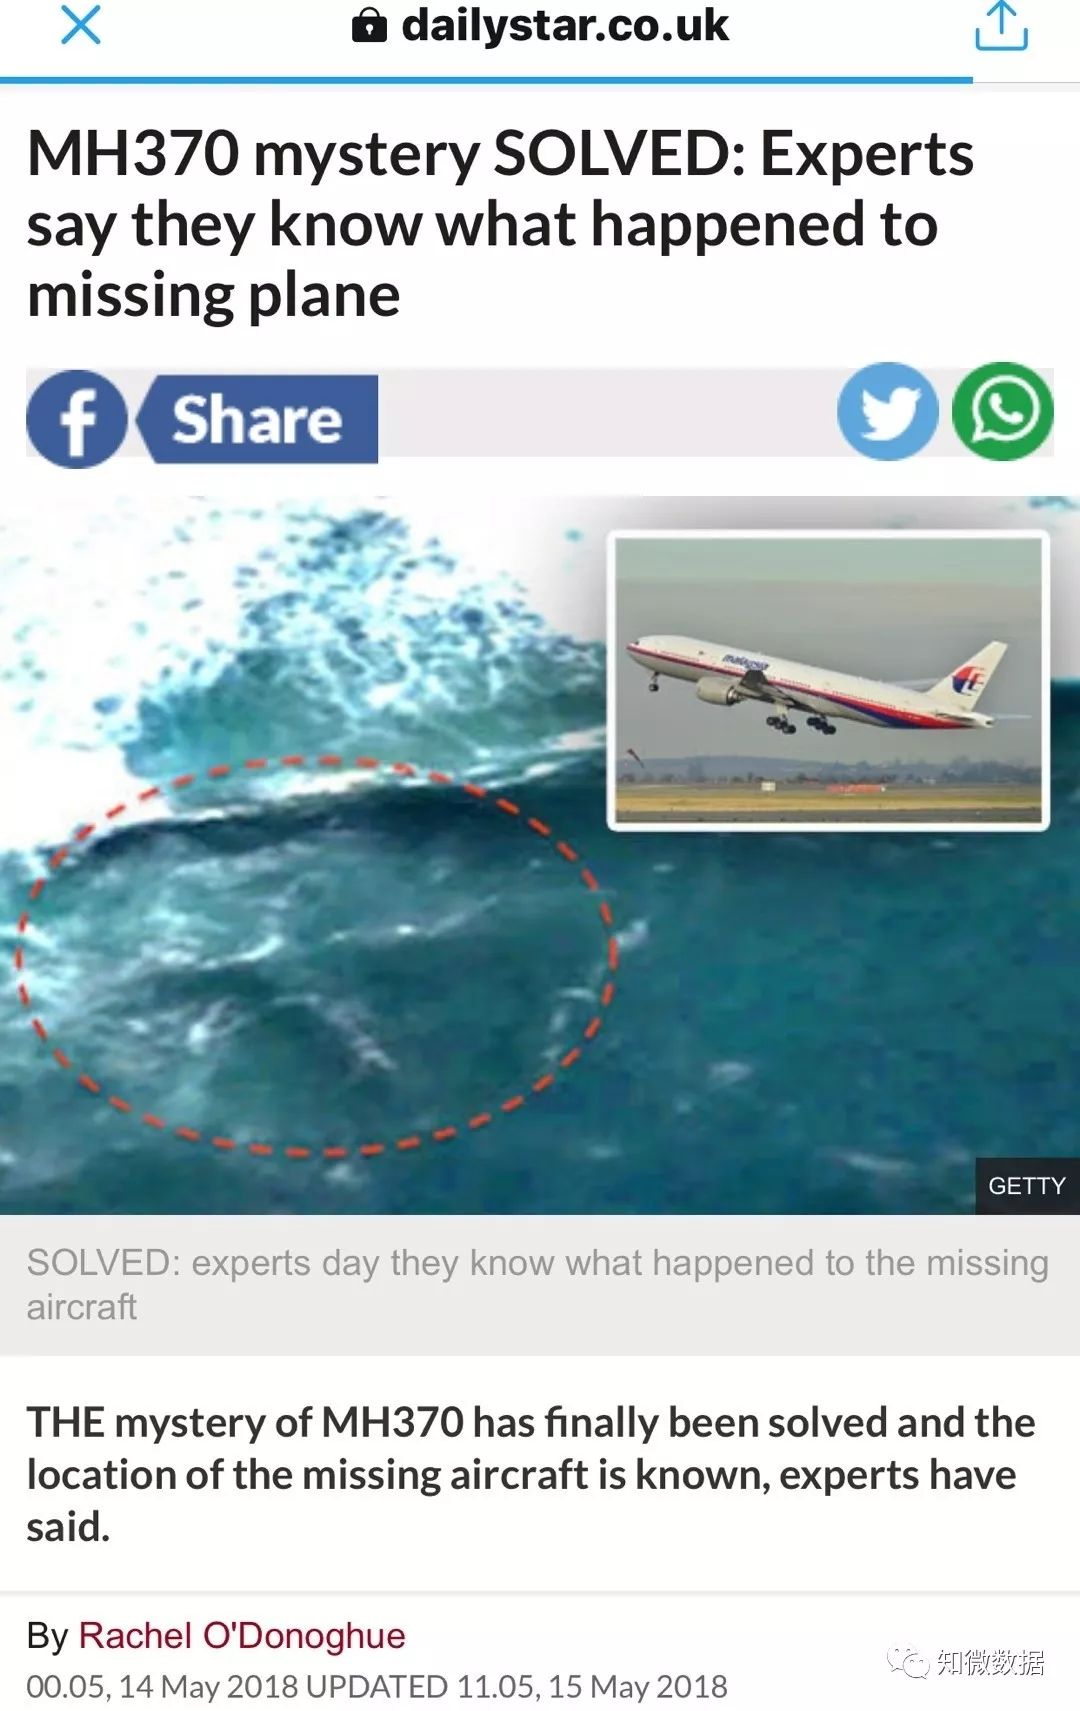 MH370在柬埔寨密林？传播路径告诉你这条新闻不可信！